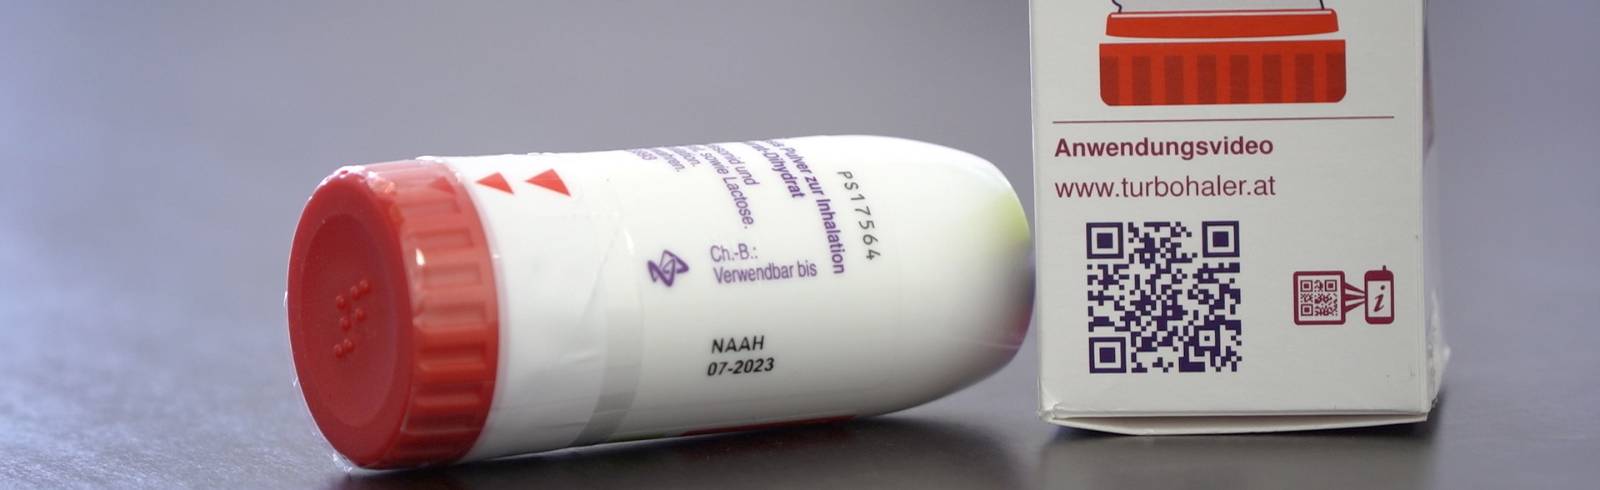 Asthma-Spray gegen Covid: Heilmittel oder Hype?